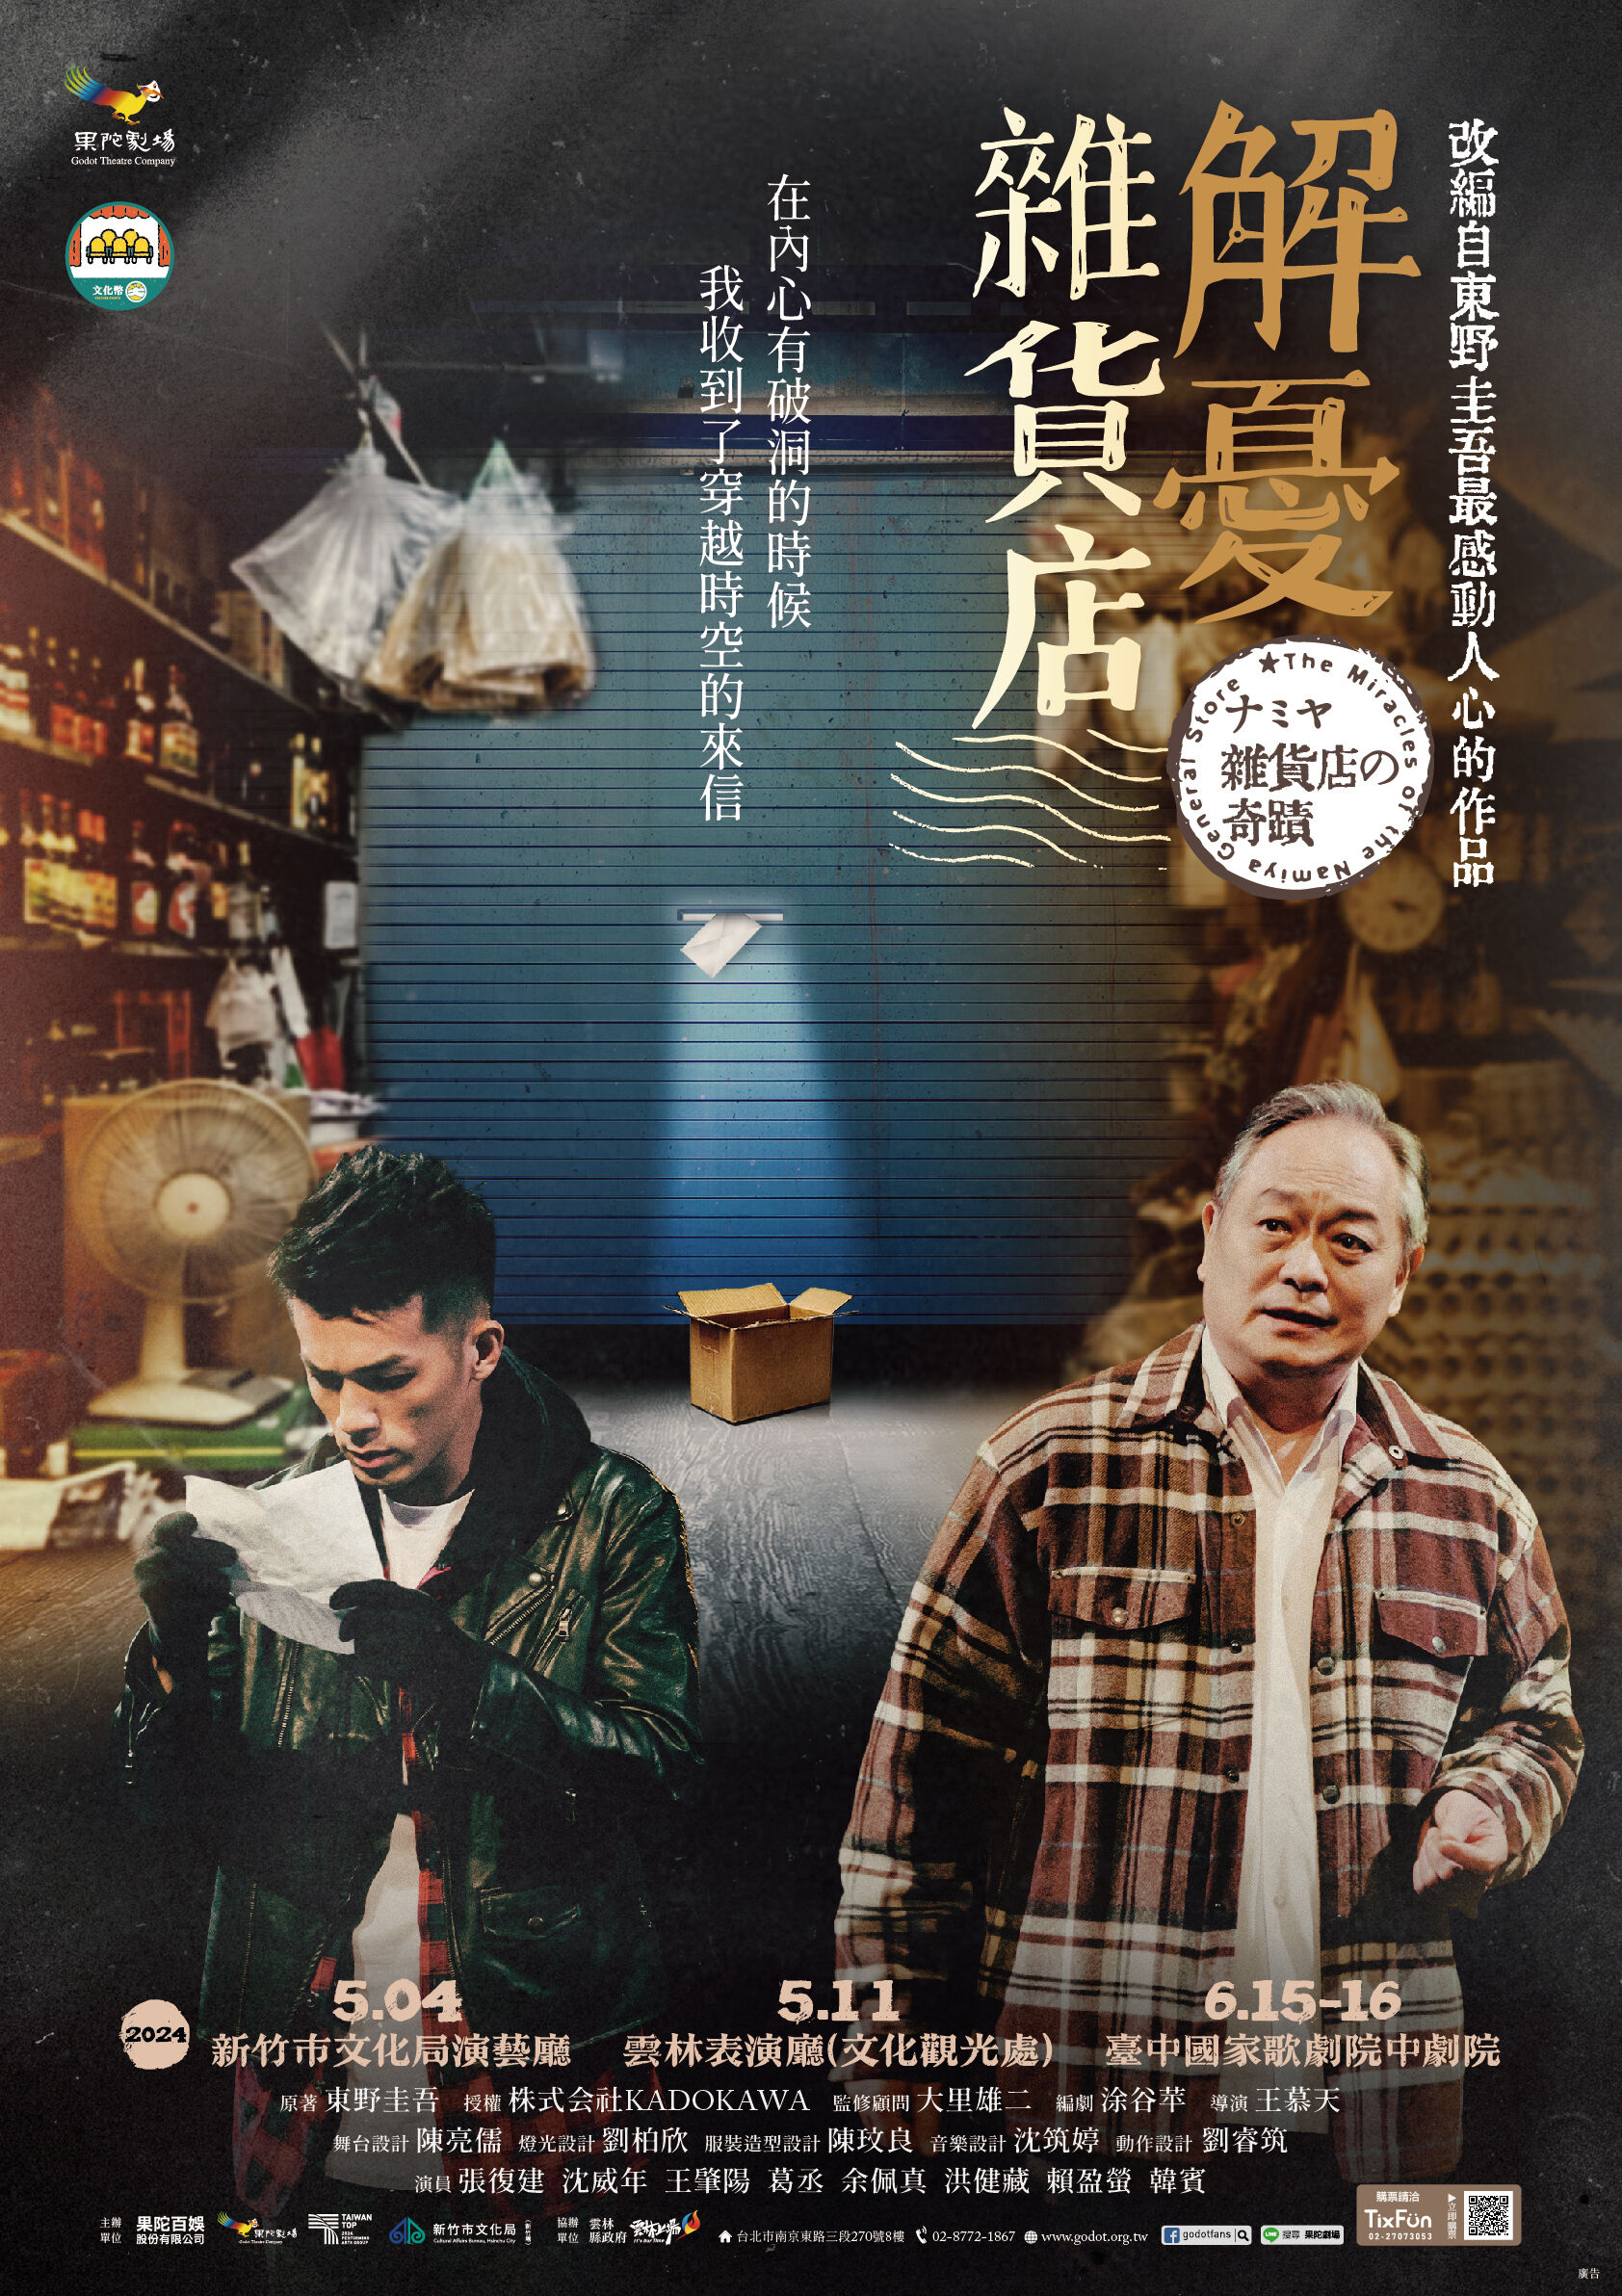 果陀劇場《解憂雜貨店》5月4日晚上7時30分將在新竹市文化局演藝廳隆重登場。